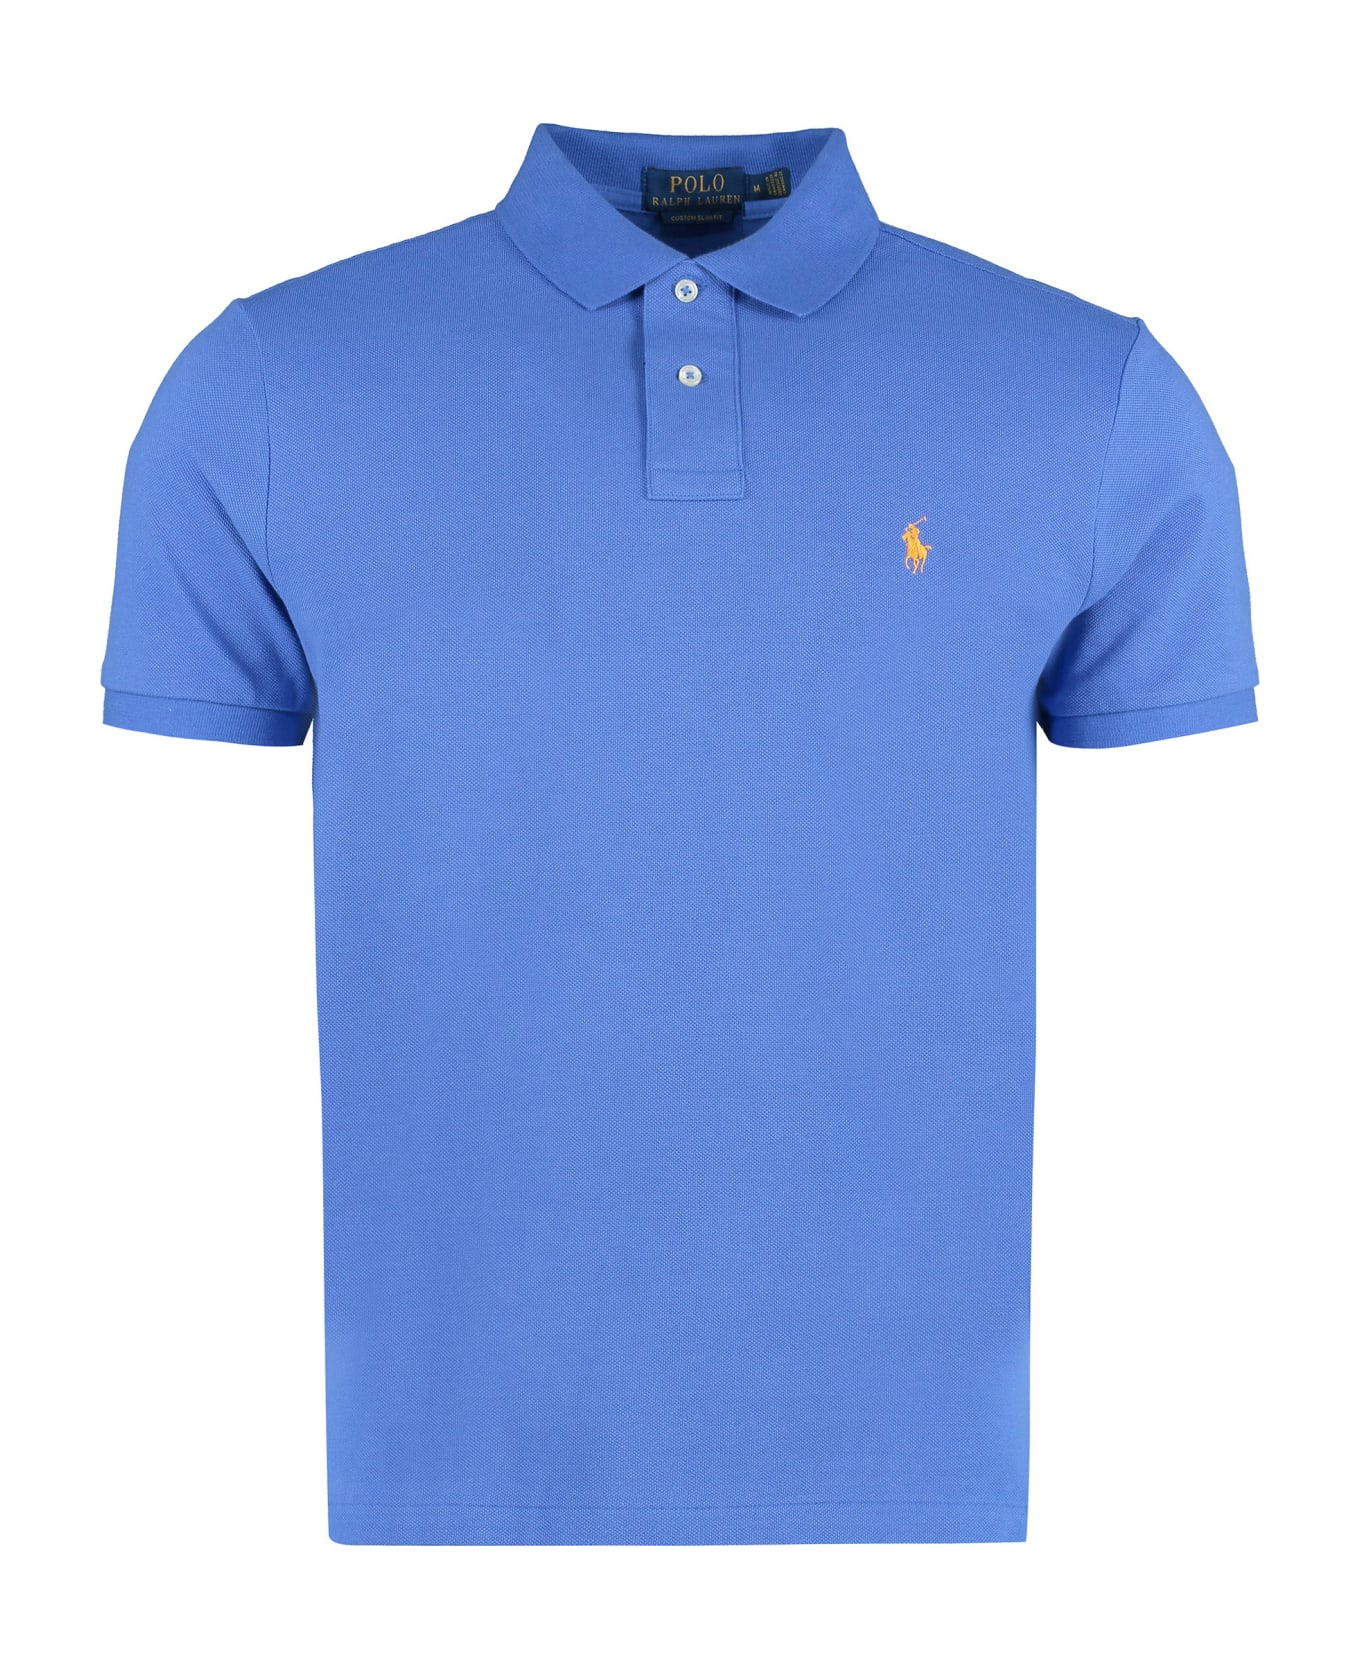 Ralph Lauren Short Sleeve Cotton Polo Shirt - blue ポロシャツ